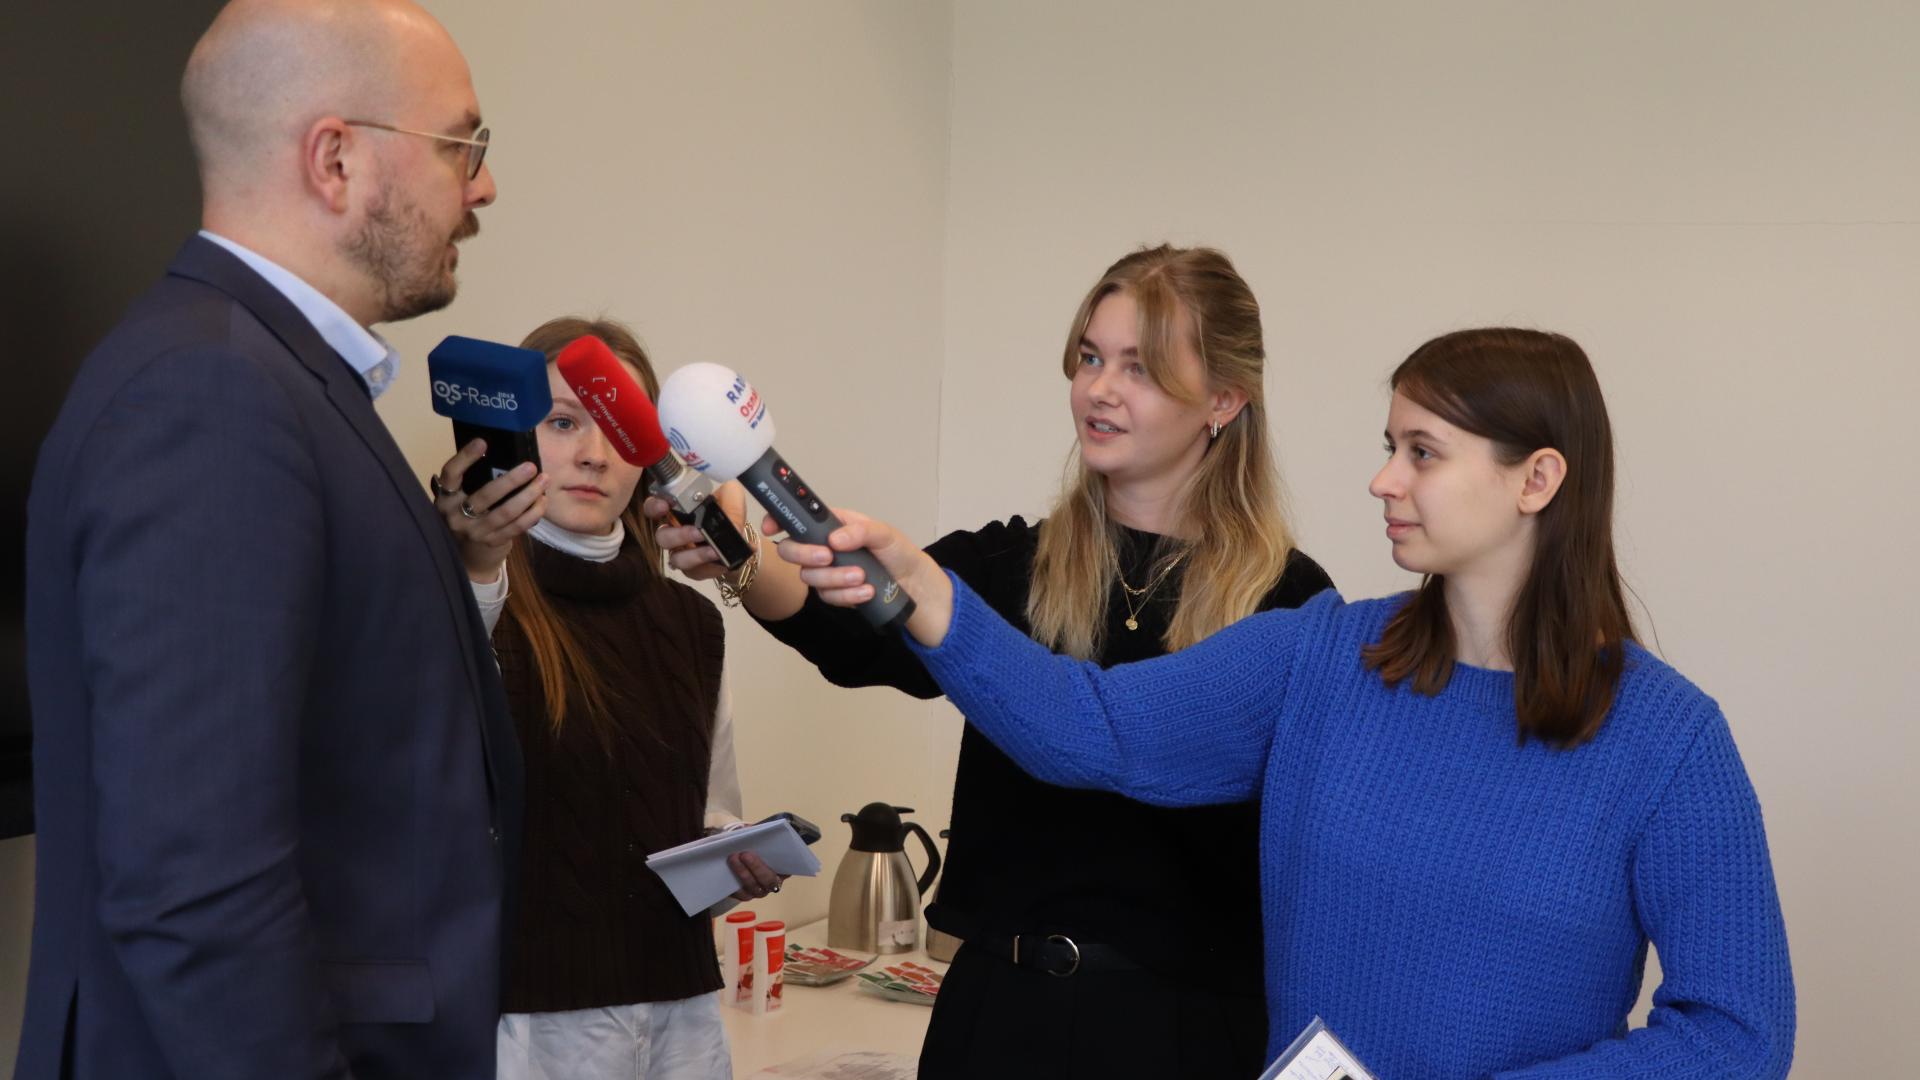 Drei junge Frauen befragen einen Mann und haben Hörfunkmikrofone in der Hand